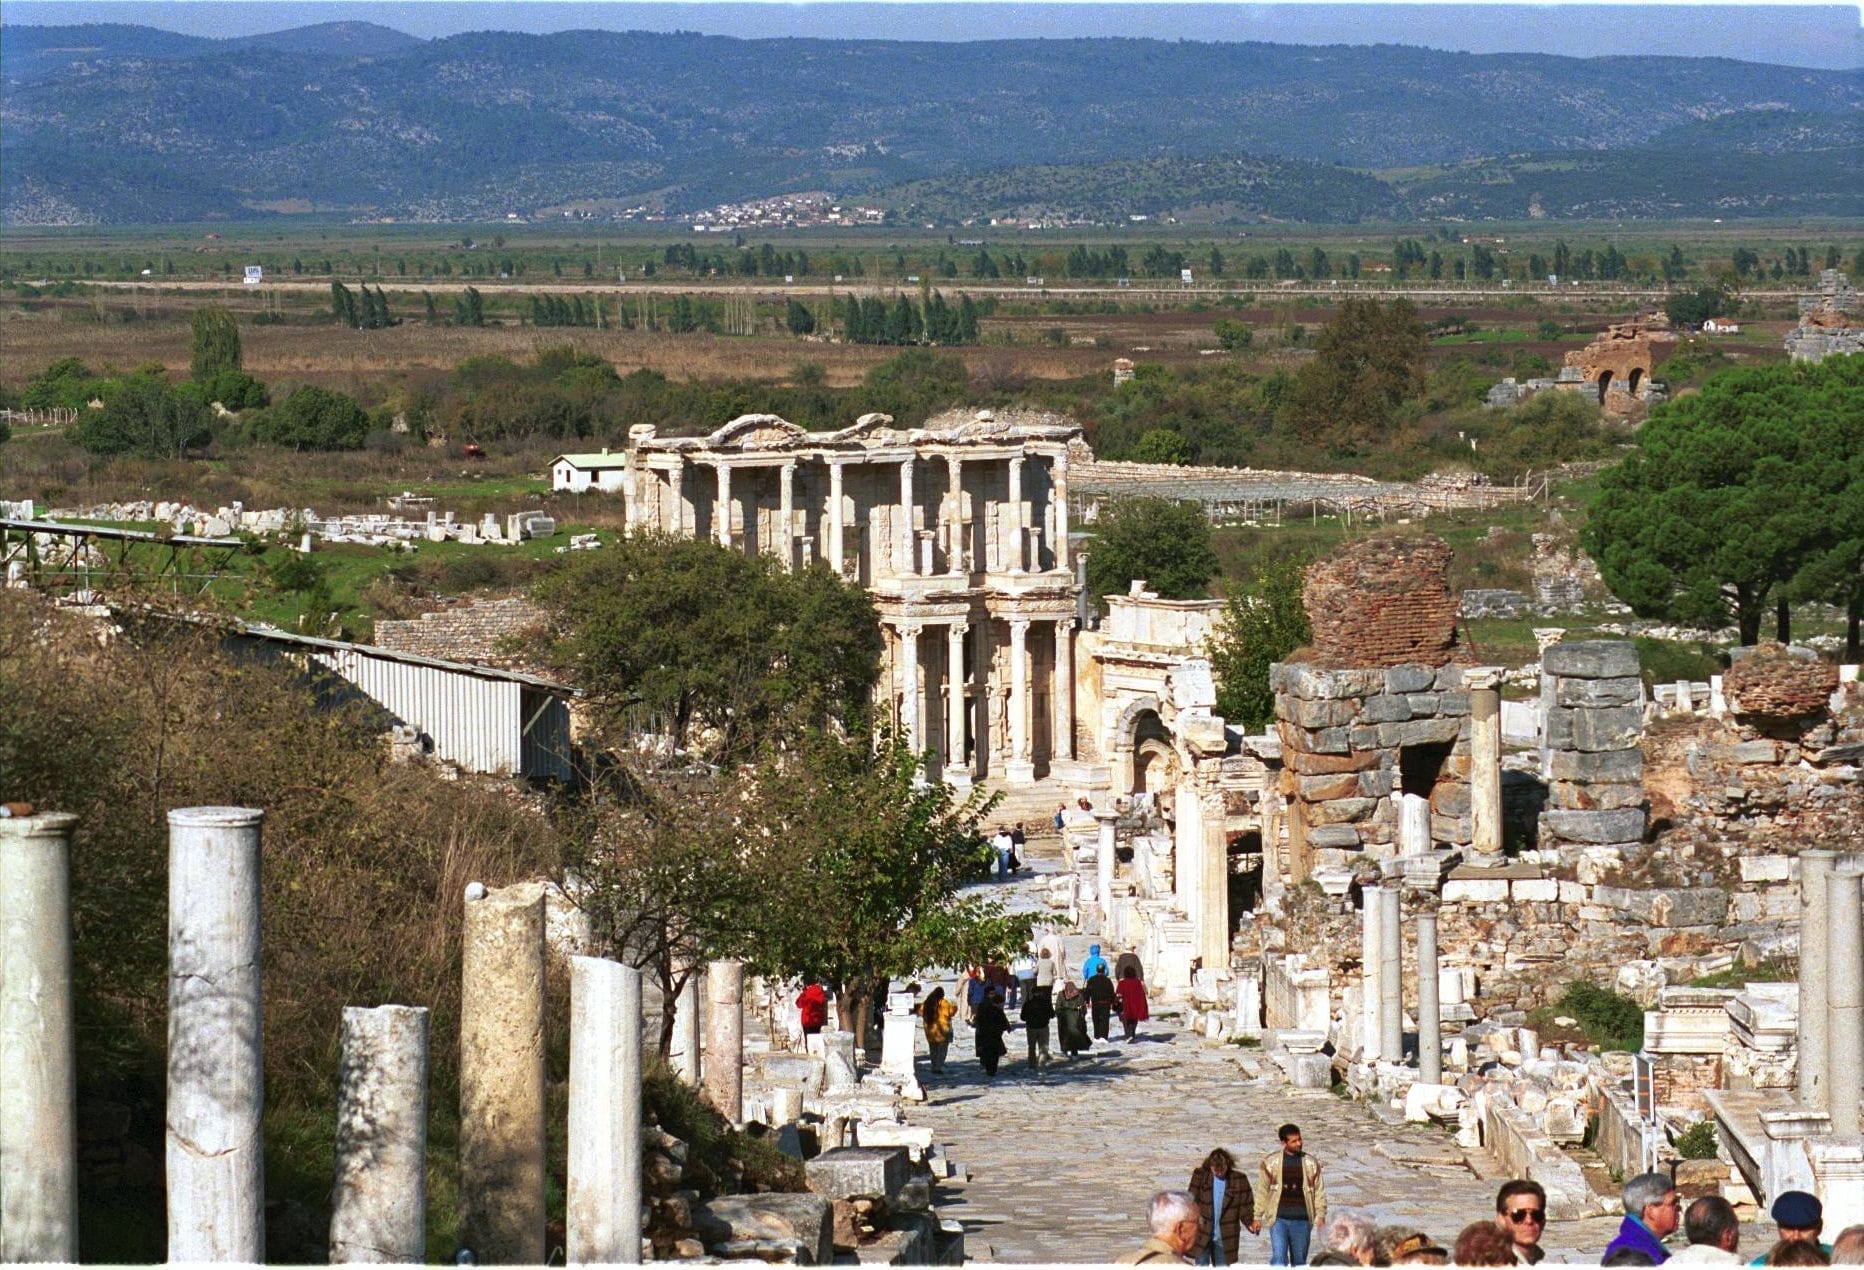 View of ruins of ephesus